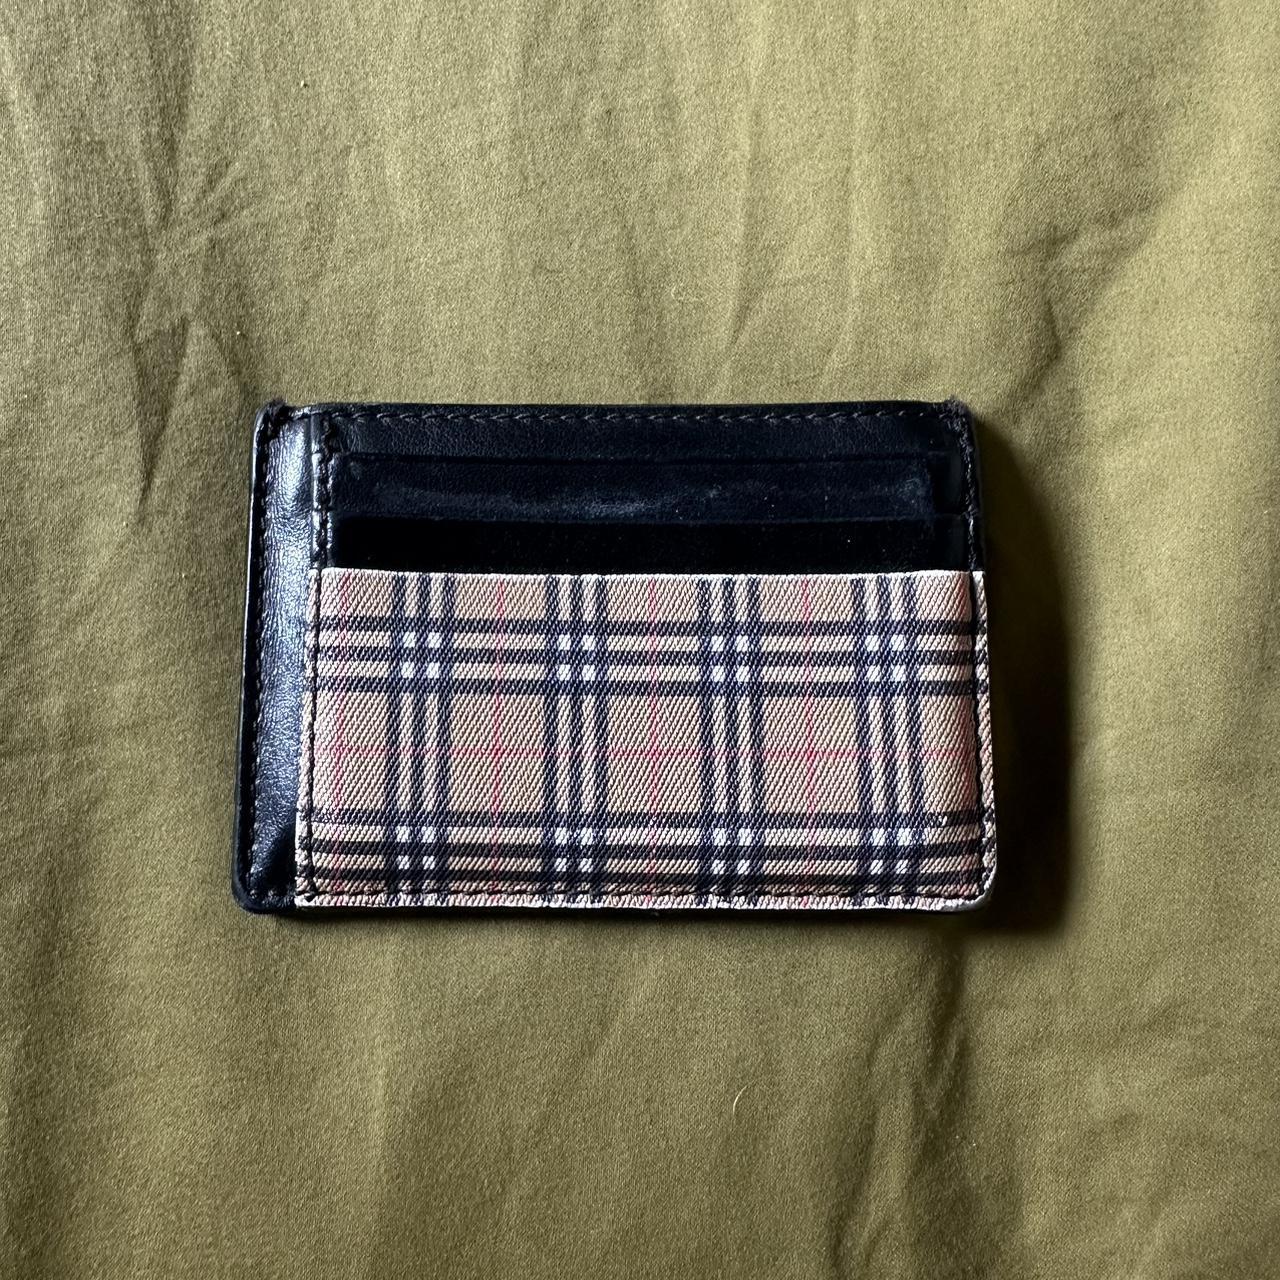 Burberry wallet  Burberry wallet, Burberry handbags, Mens accessories